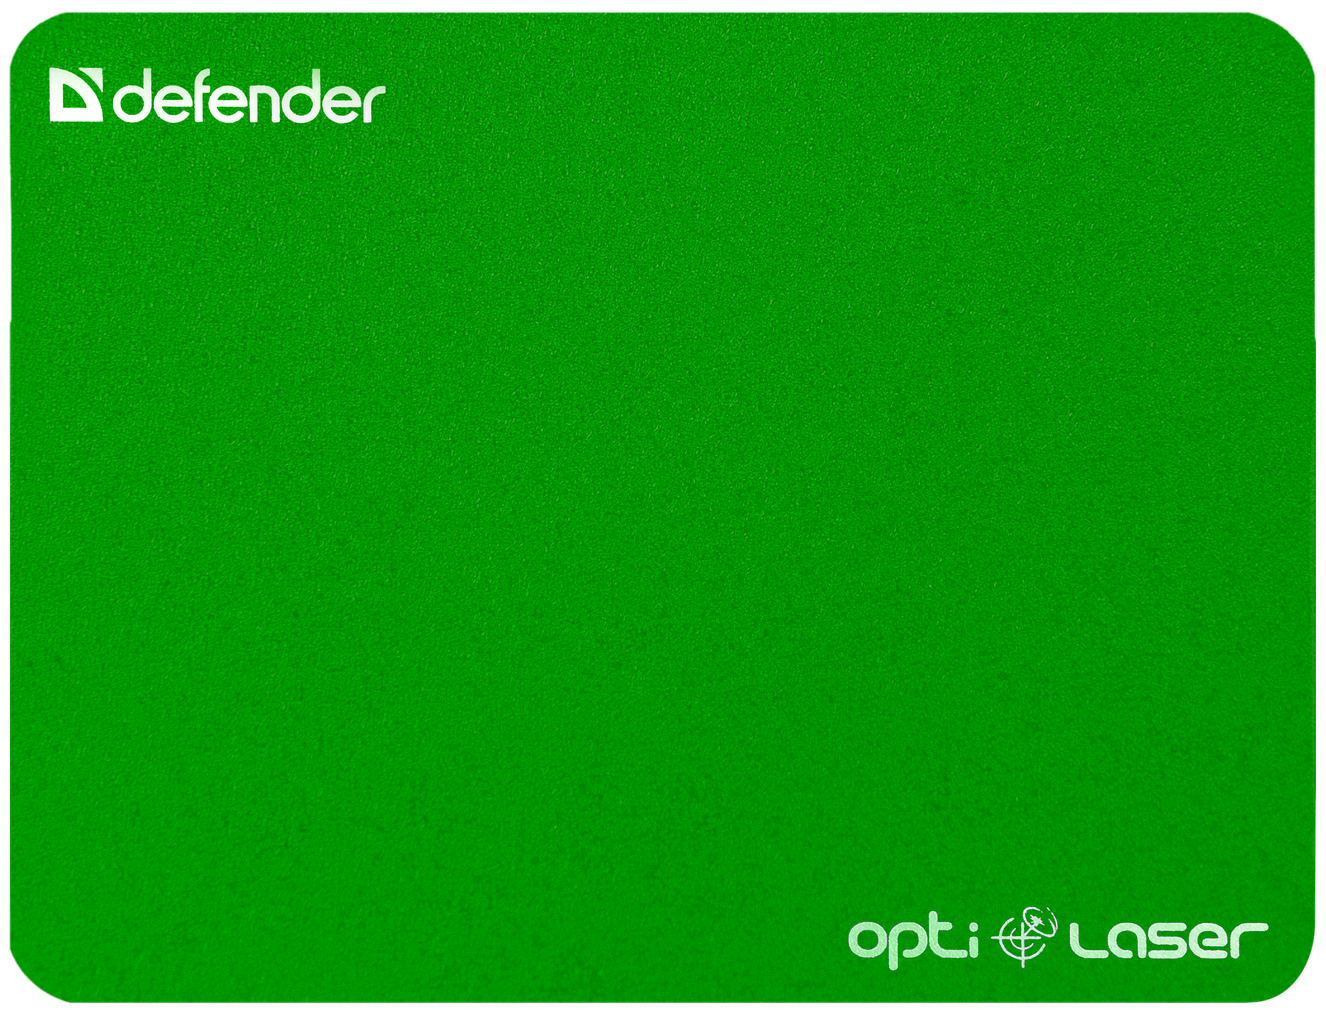 Defender Silver opti-laser